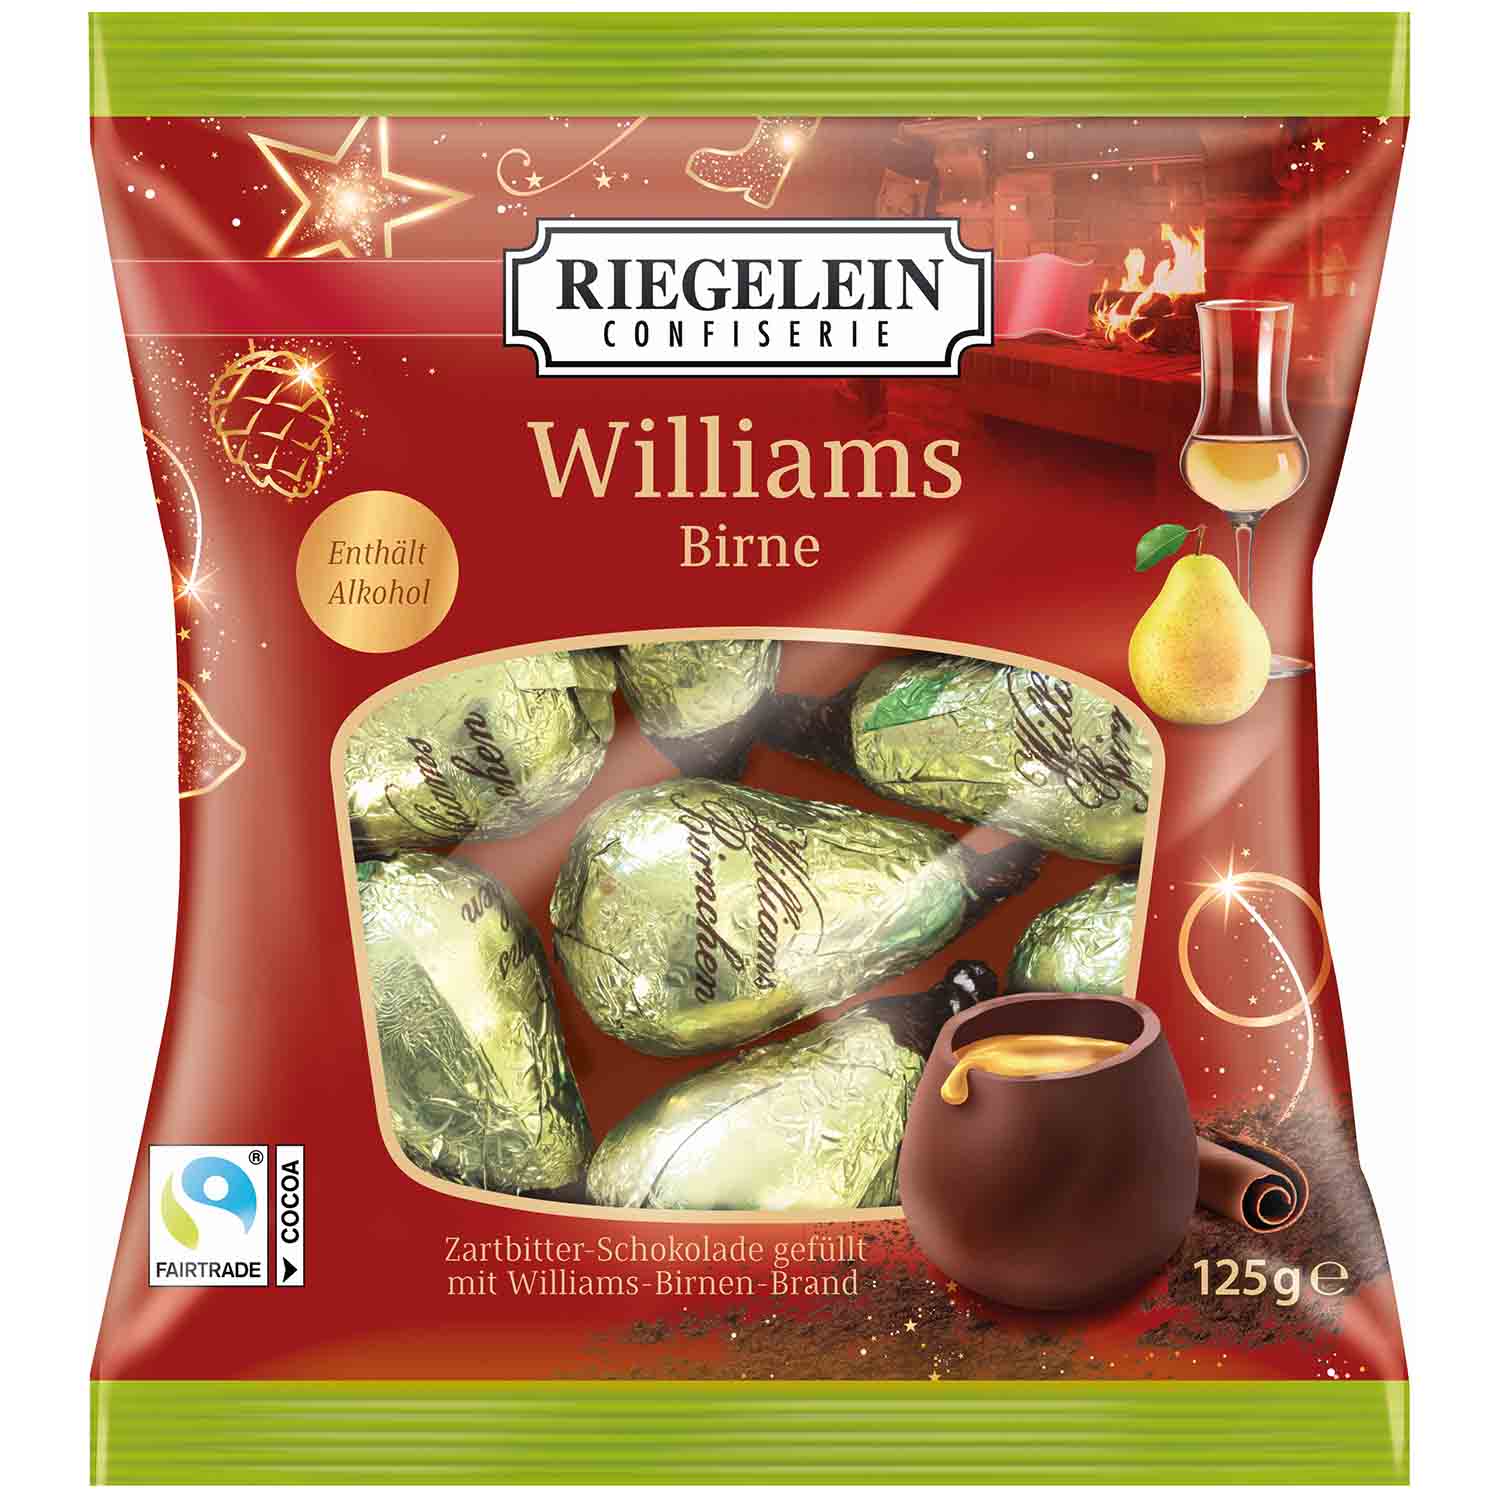 Riegelein Williams Birne 125g | Online kaufen im World of Sweets Shop